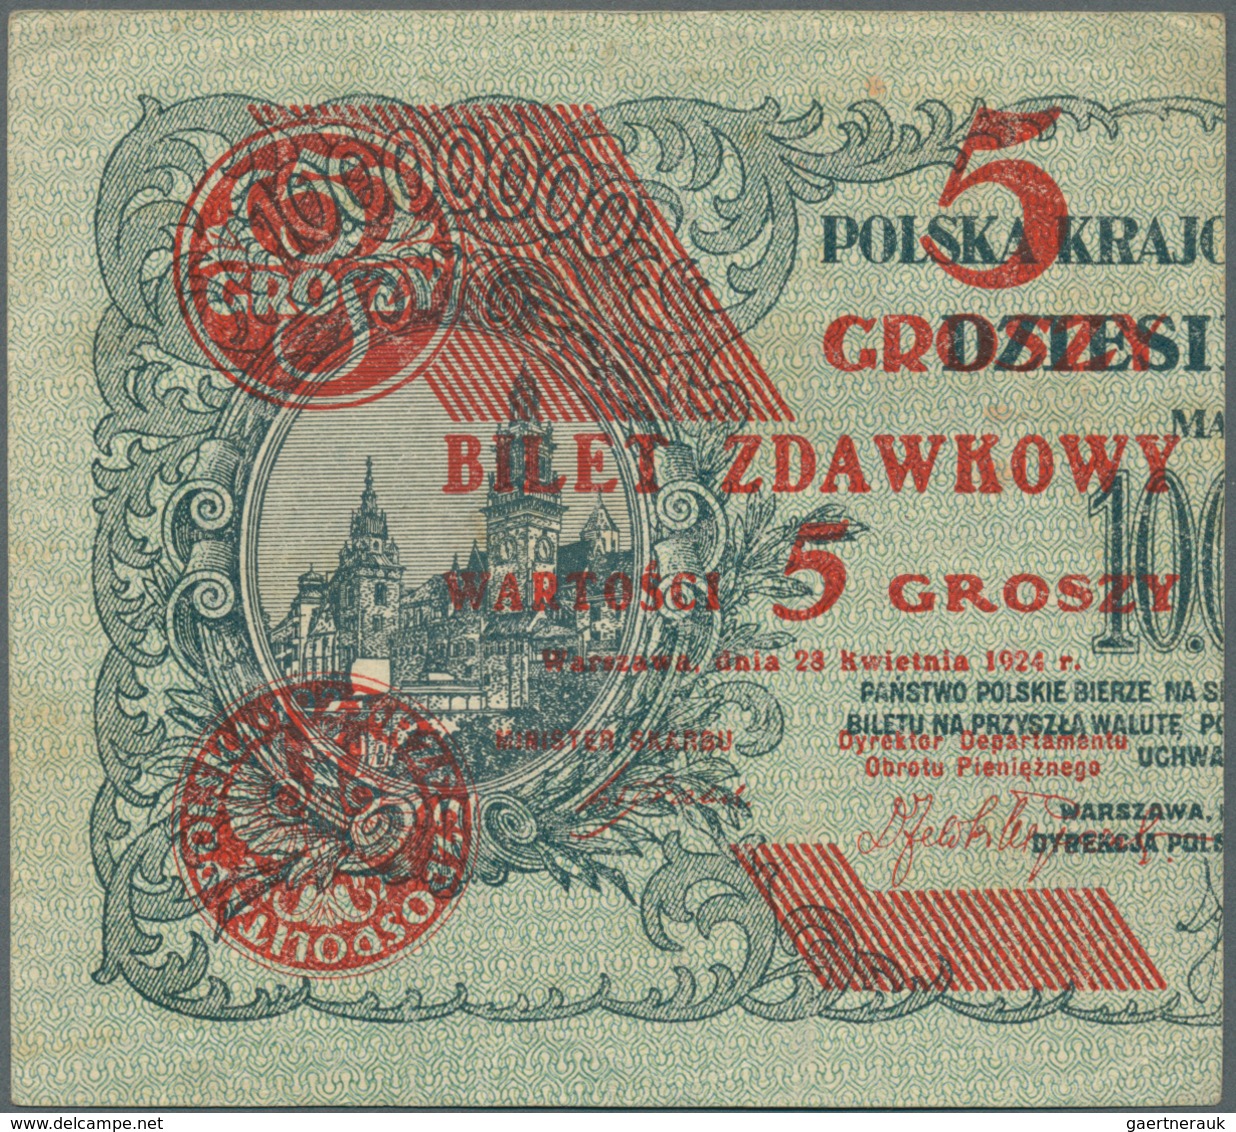 02195 Poland / Polen: Half Note 5 Groszy 1924 P. 43a, In Condition: XF+. - Poland